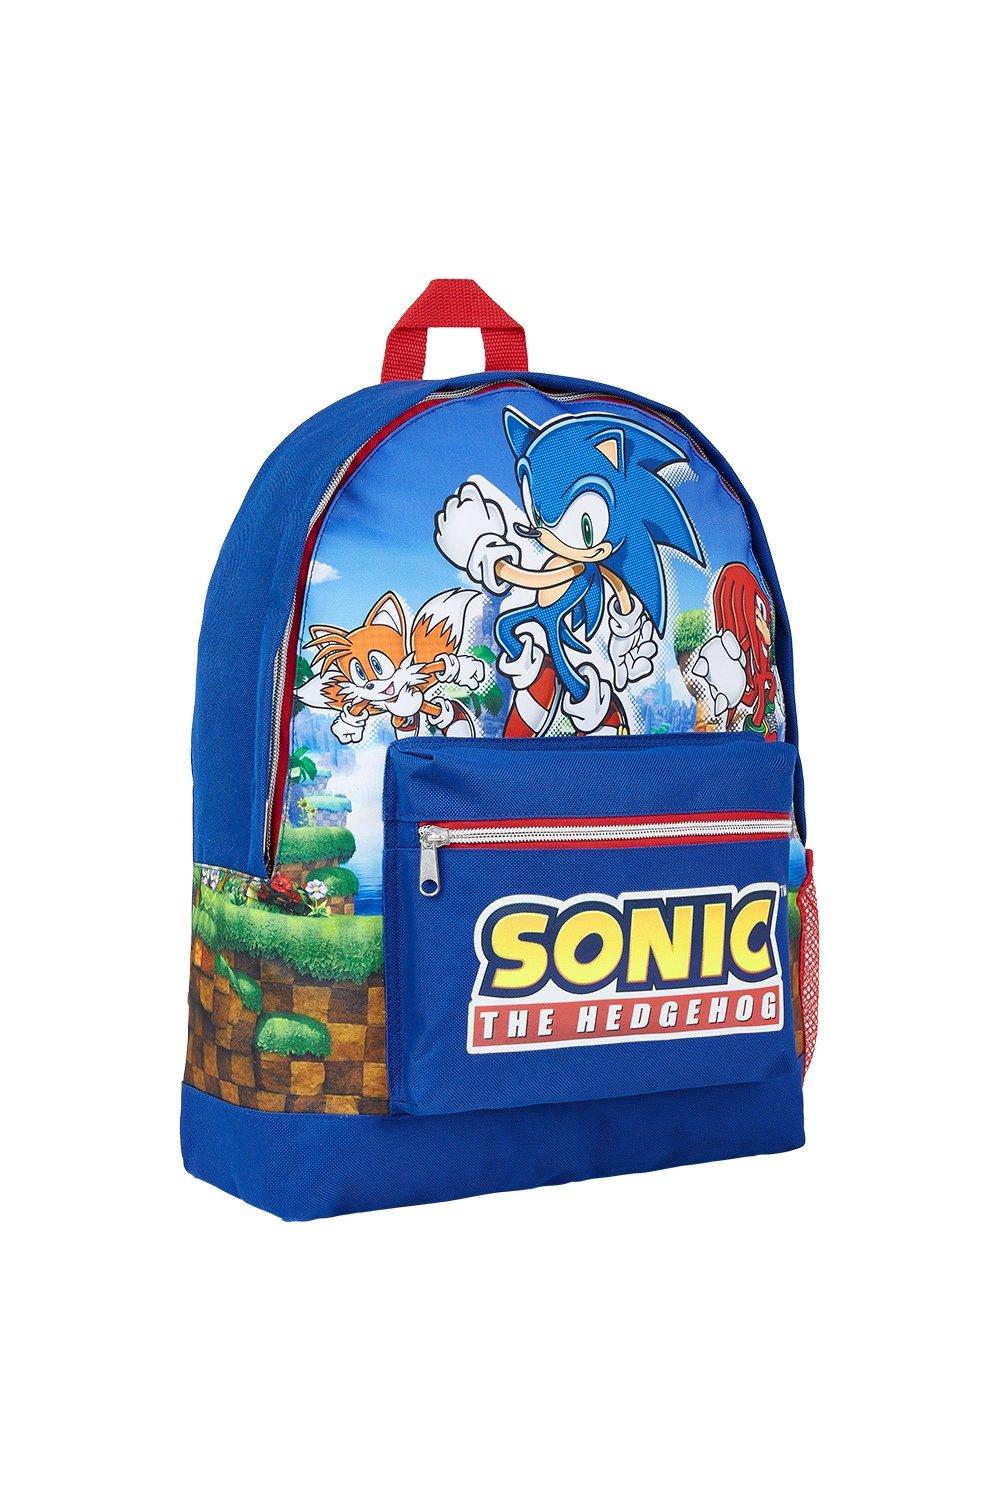 Рюкзак большой емкости Sonic the Hedgehog, синий командный рюкзак beaver для девочек и мальчиков забавный дорожный ранец для подростков школьная сумка